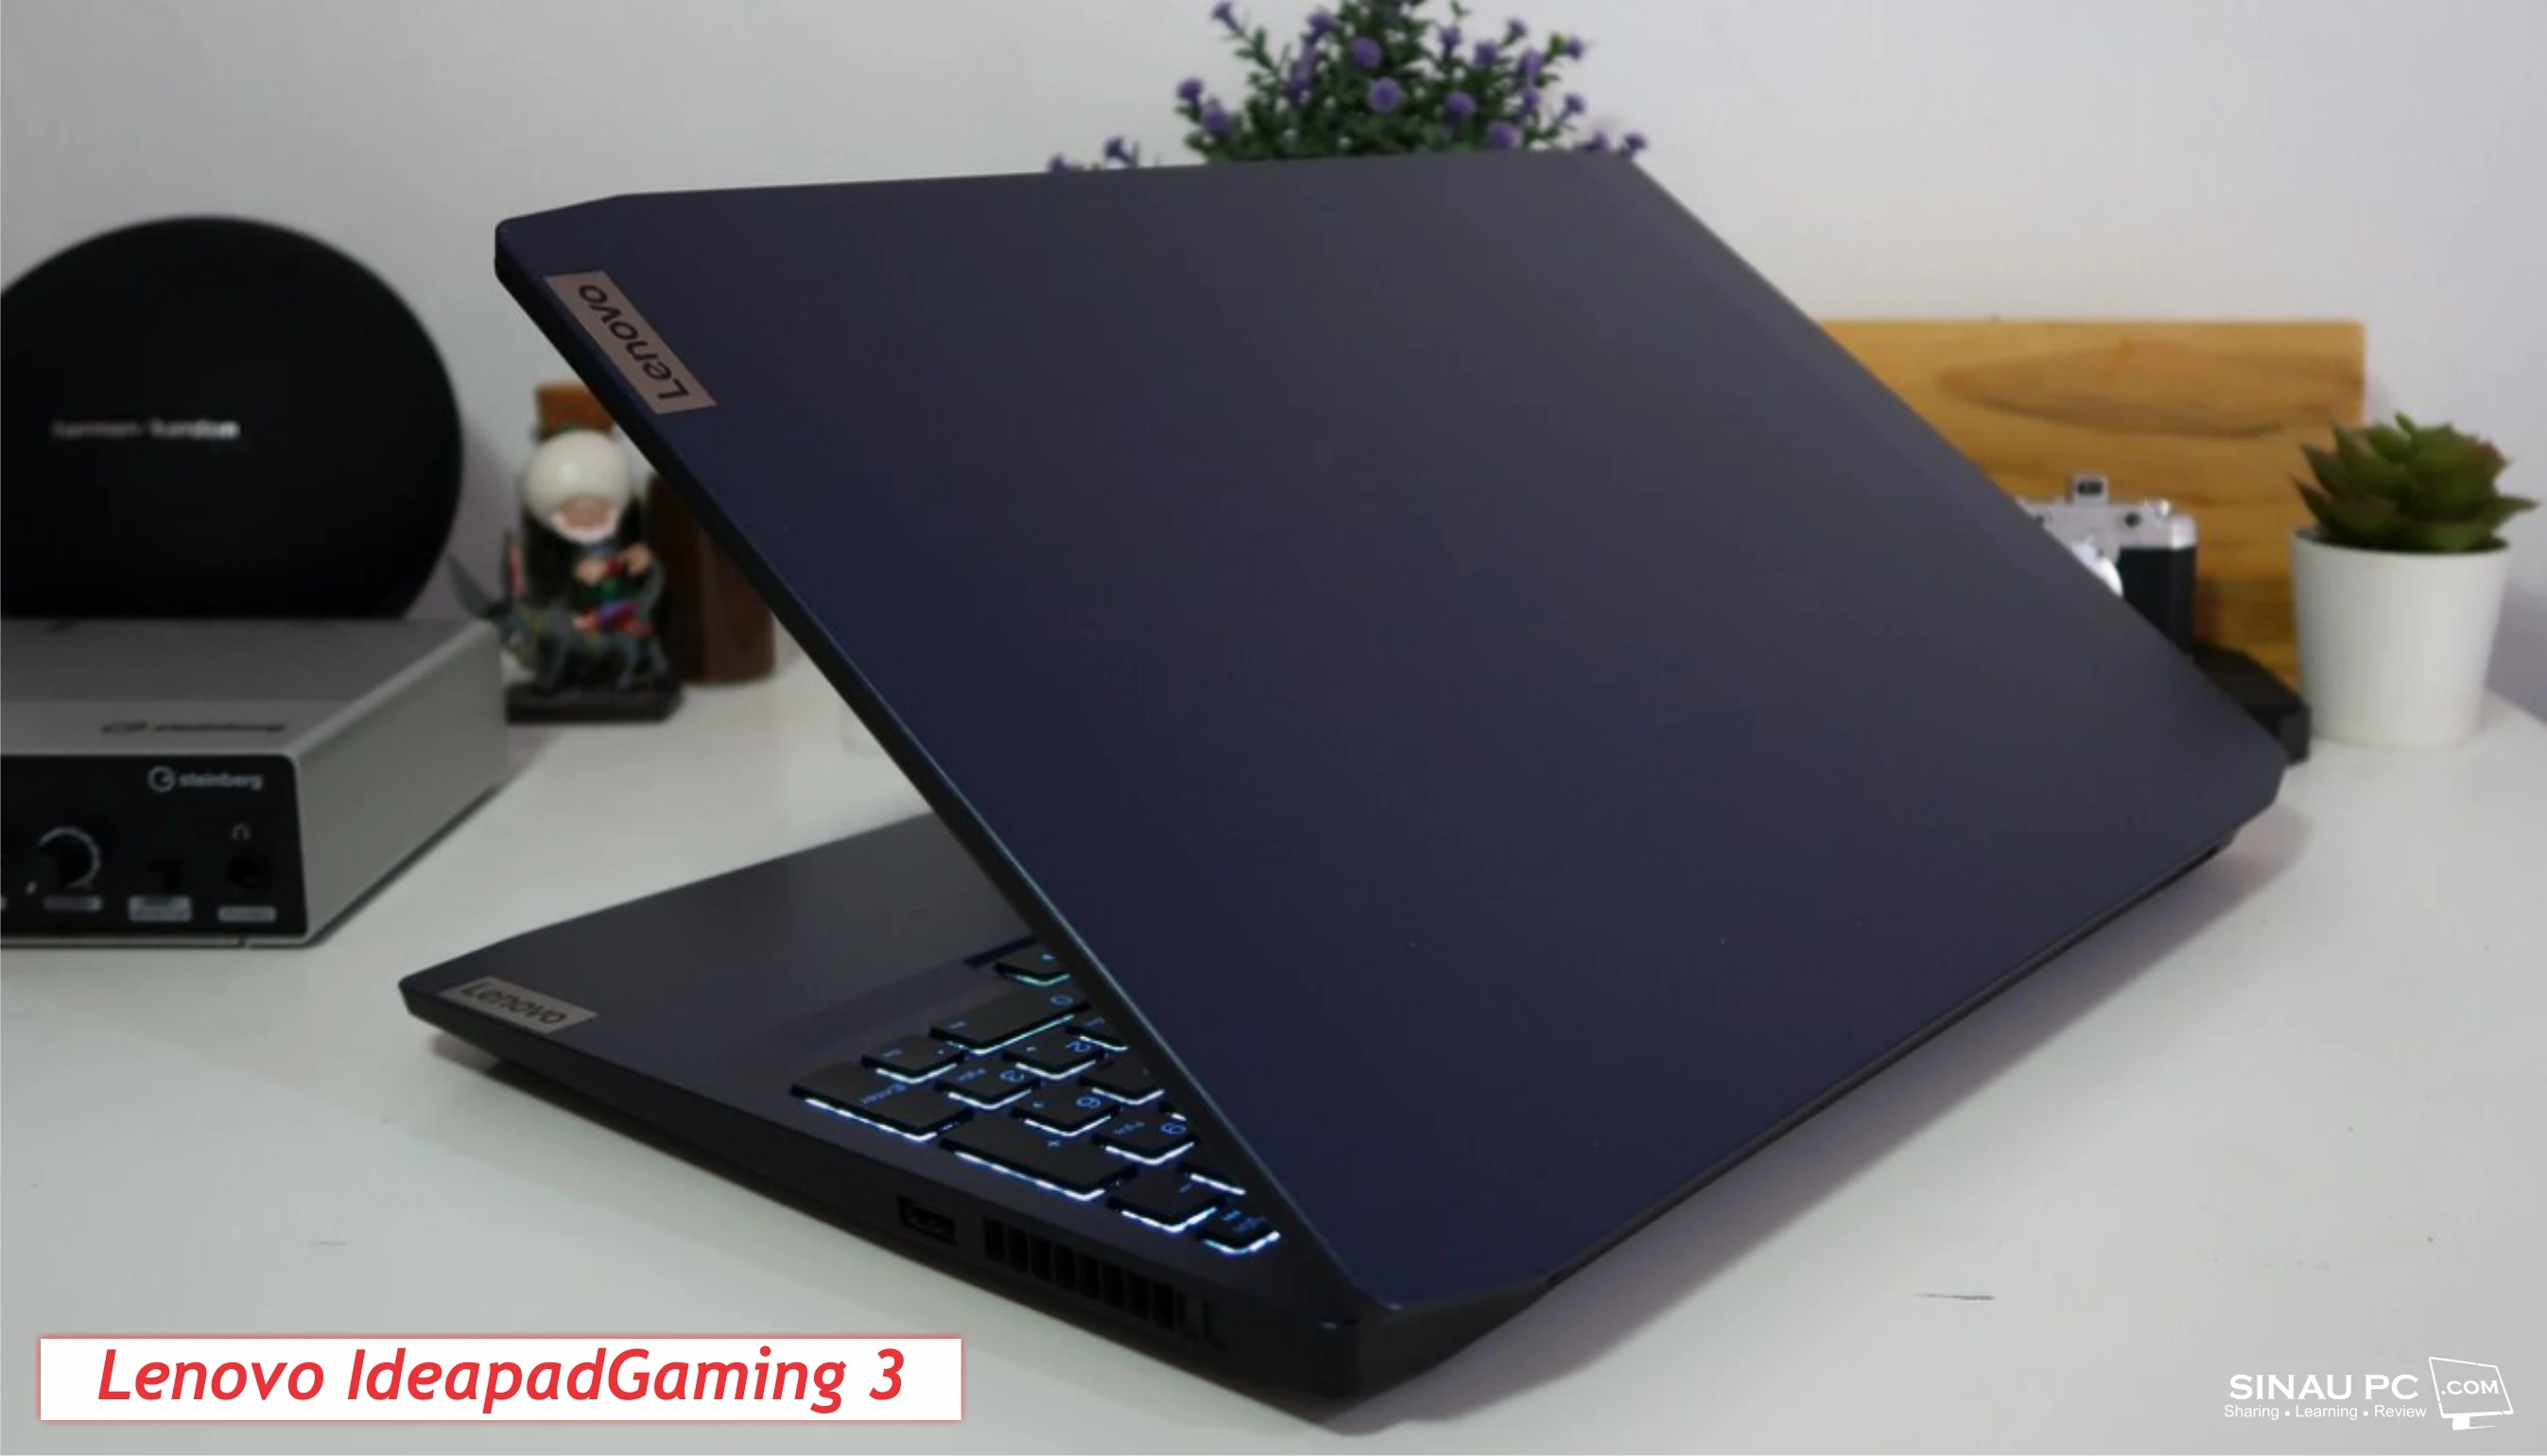 Lenovo IdeapadGaming 3 : Laptop Gaming Murah tapi Kencang